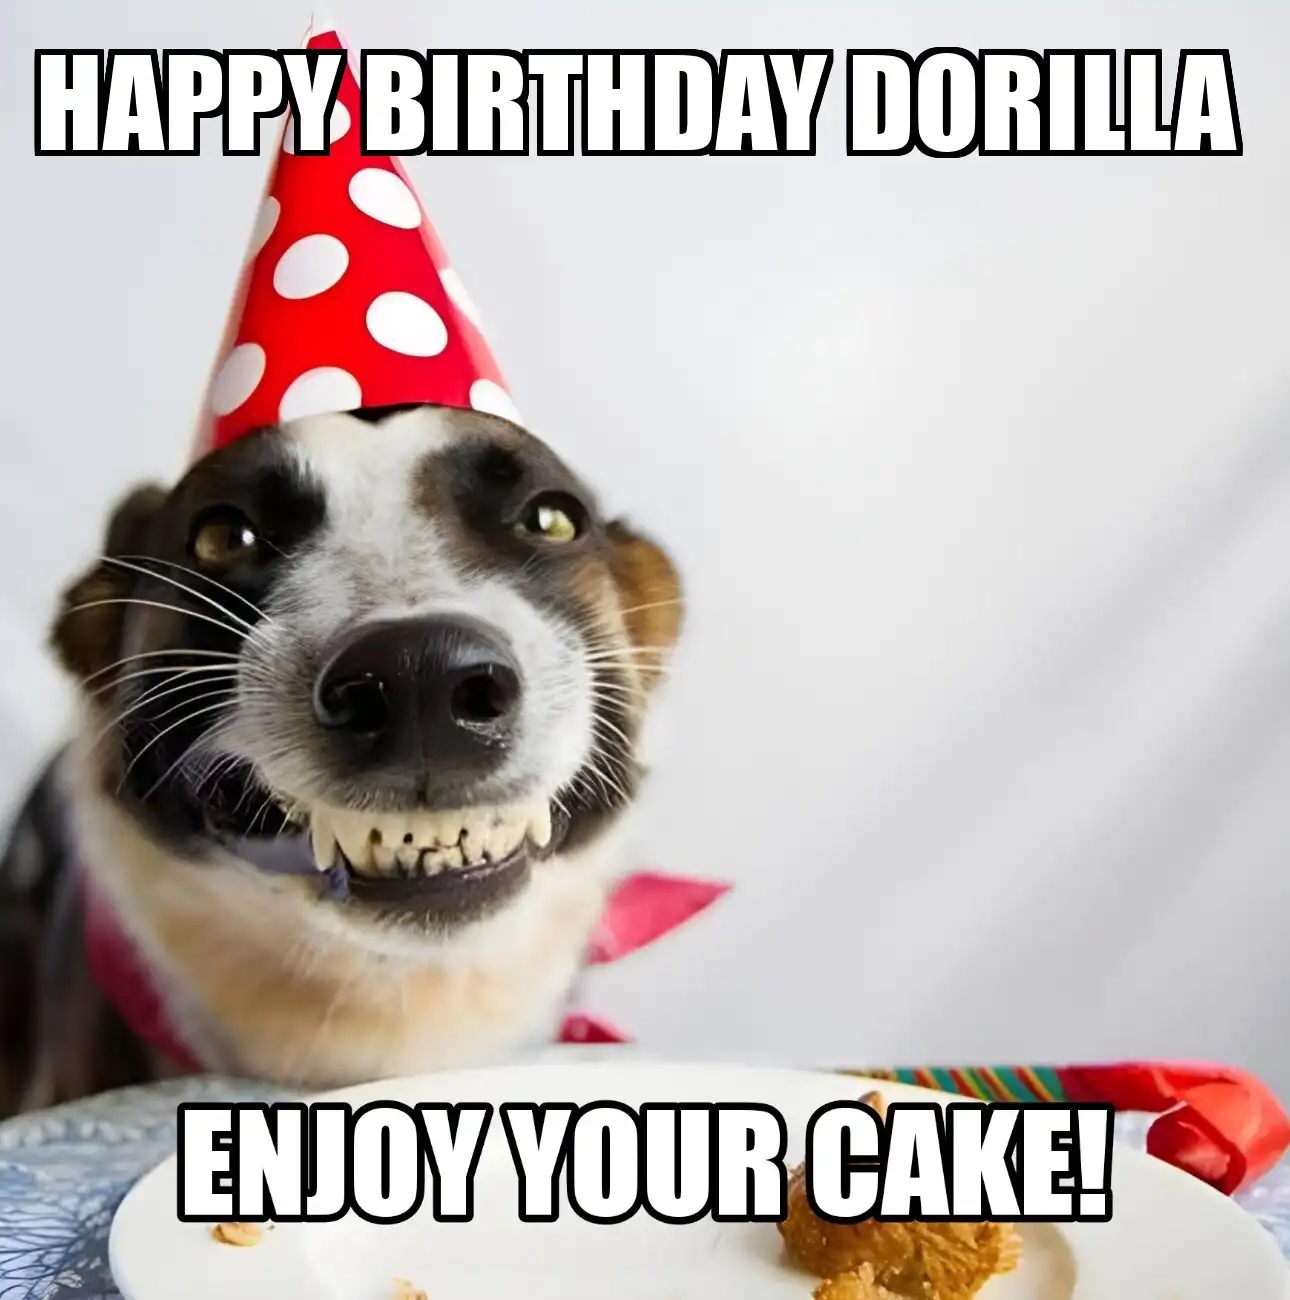 Happy Birthday Dorilla Enjoy Your Cake Dog Meme